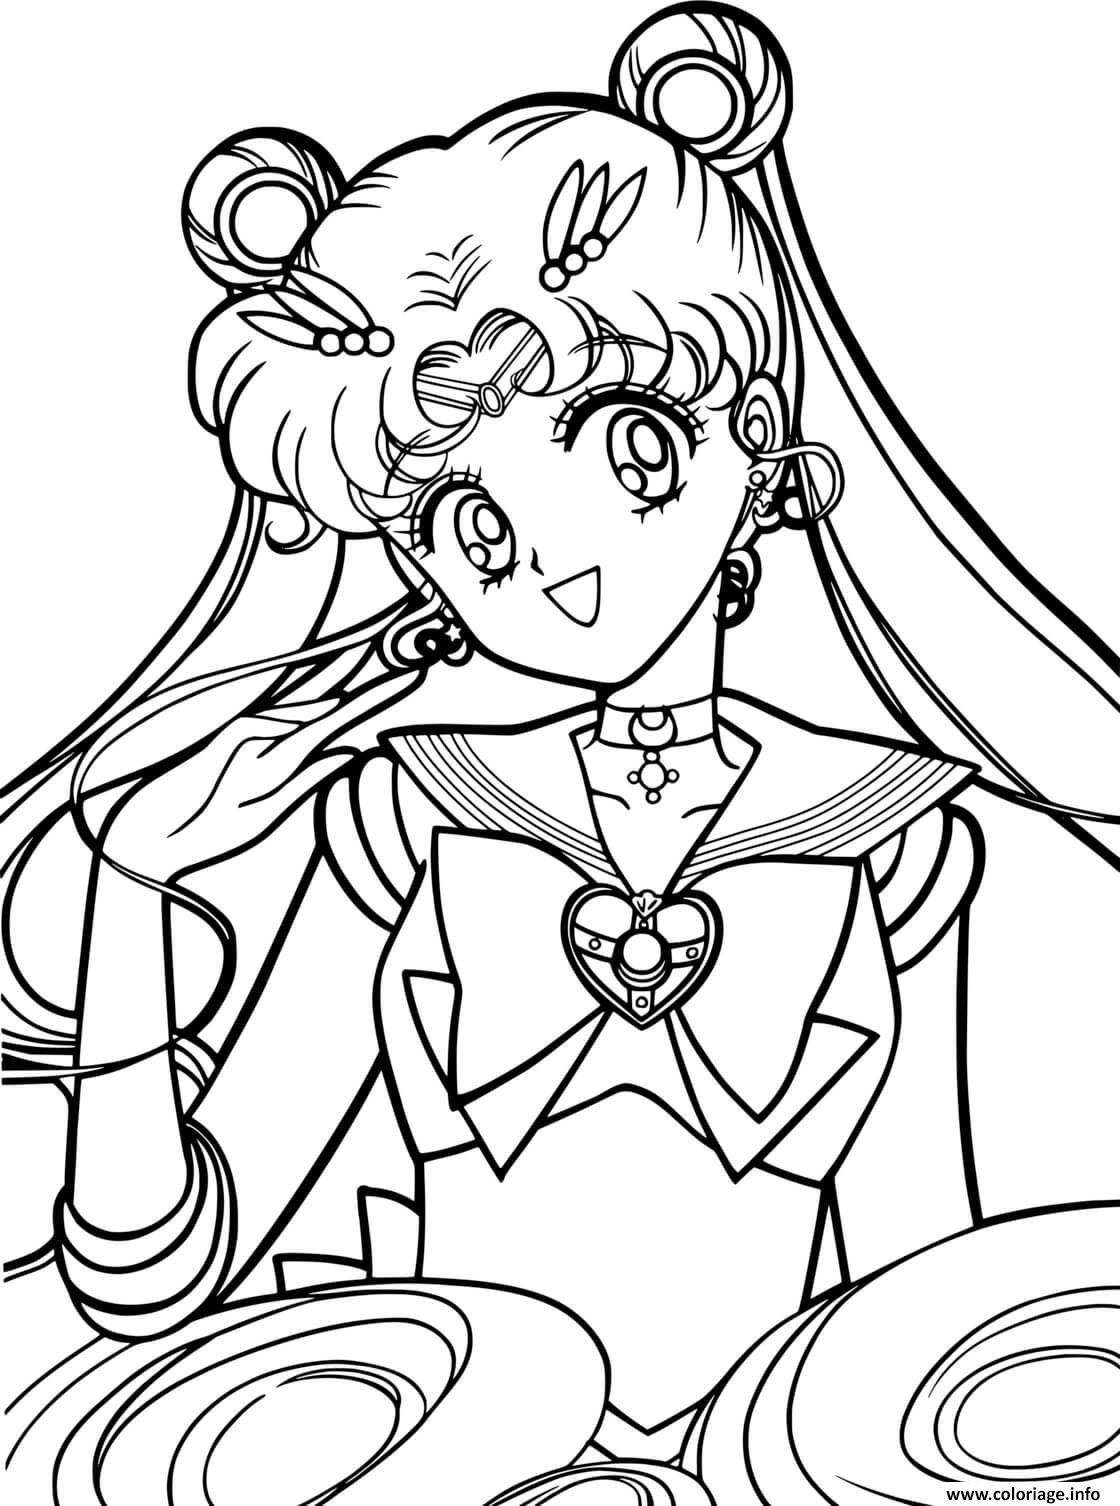 Coloriage Sailor Moon Dessin à Imprimer